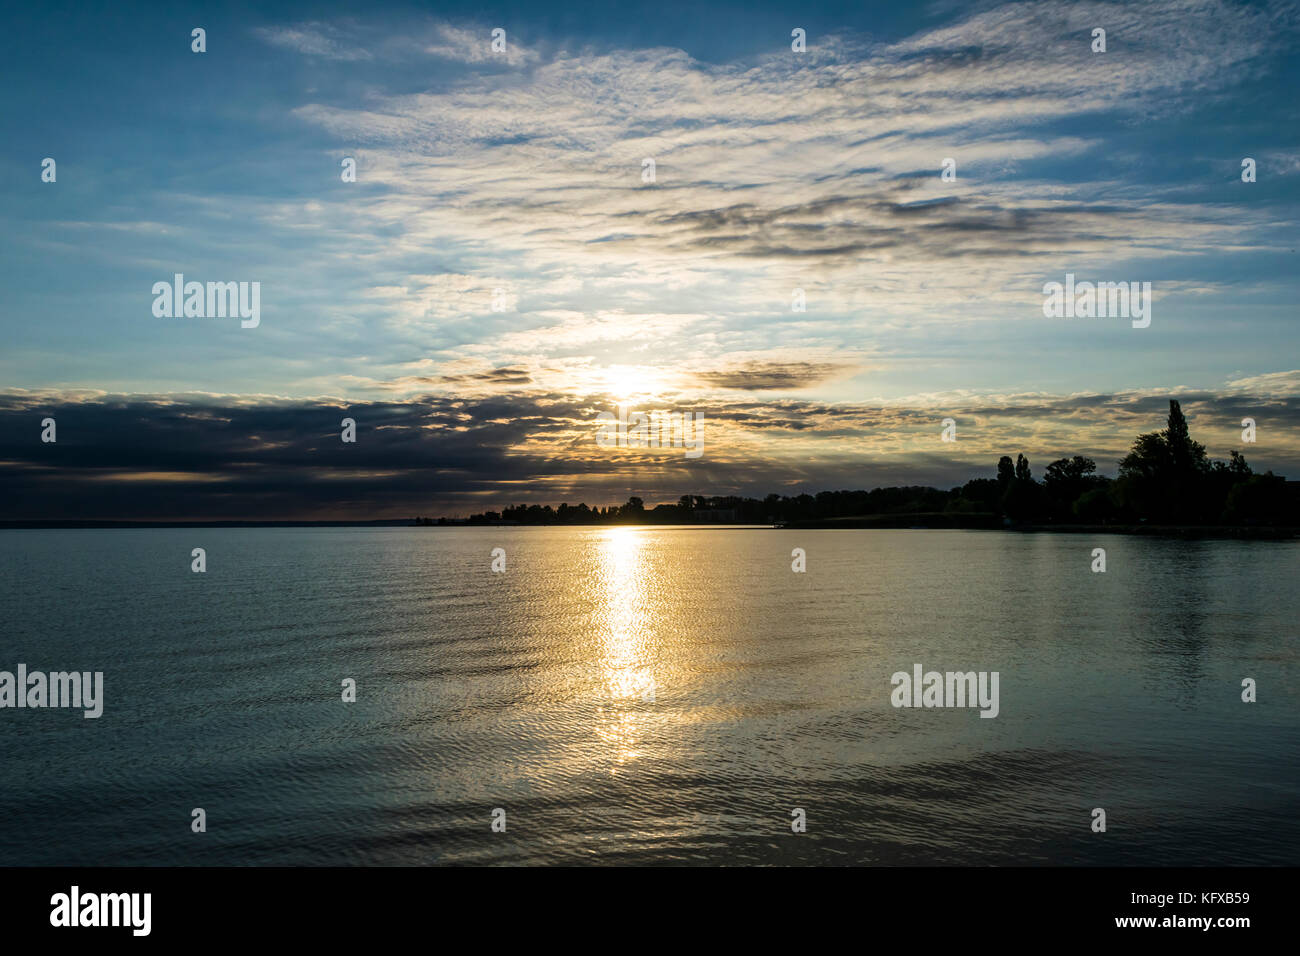 Beau lever de soleil sur le lac. Le soleil brille à travers les nuages de façon spectaculaire, silhouette d'arbres sur les rives du lac Balaton, en Hongrie. Banque D'Images